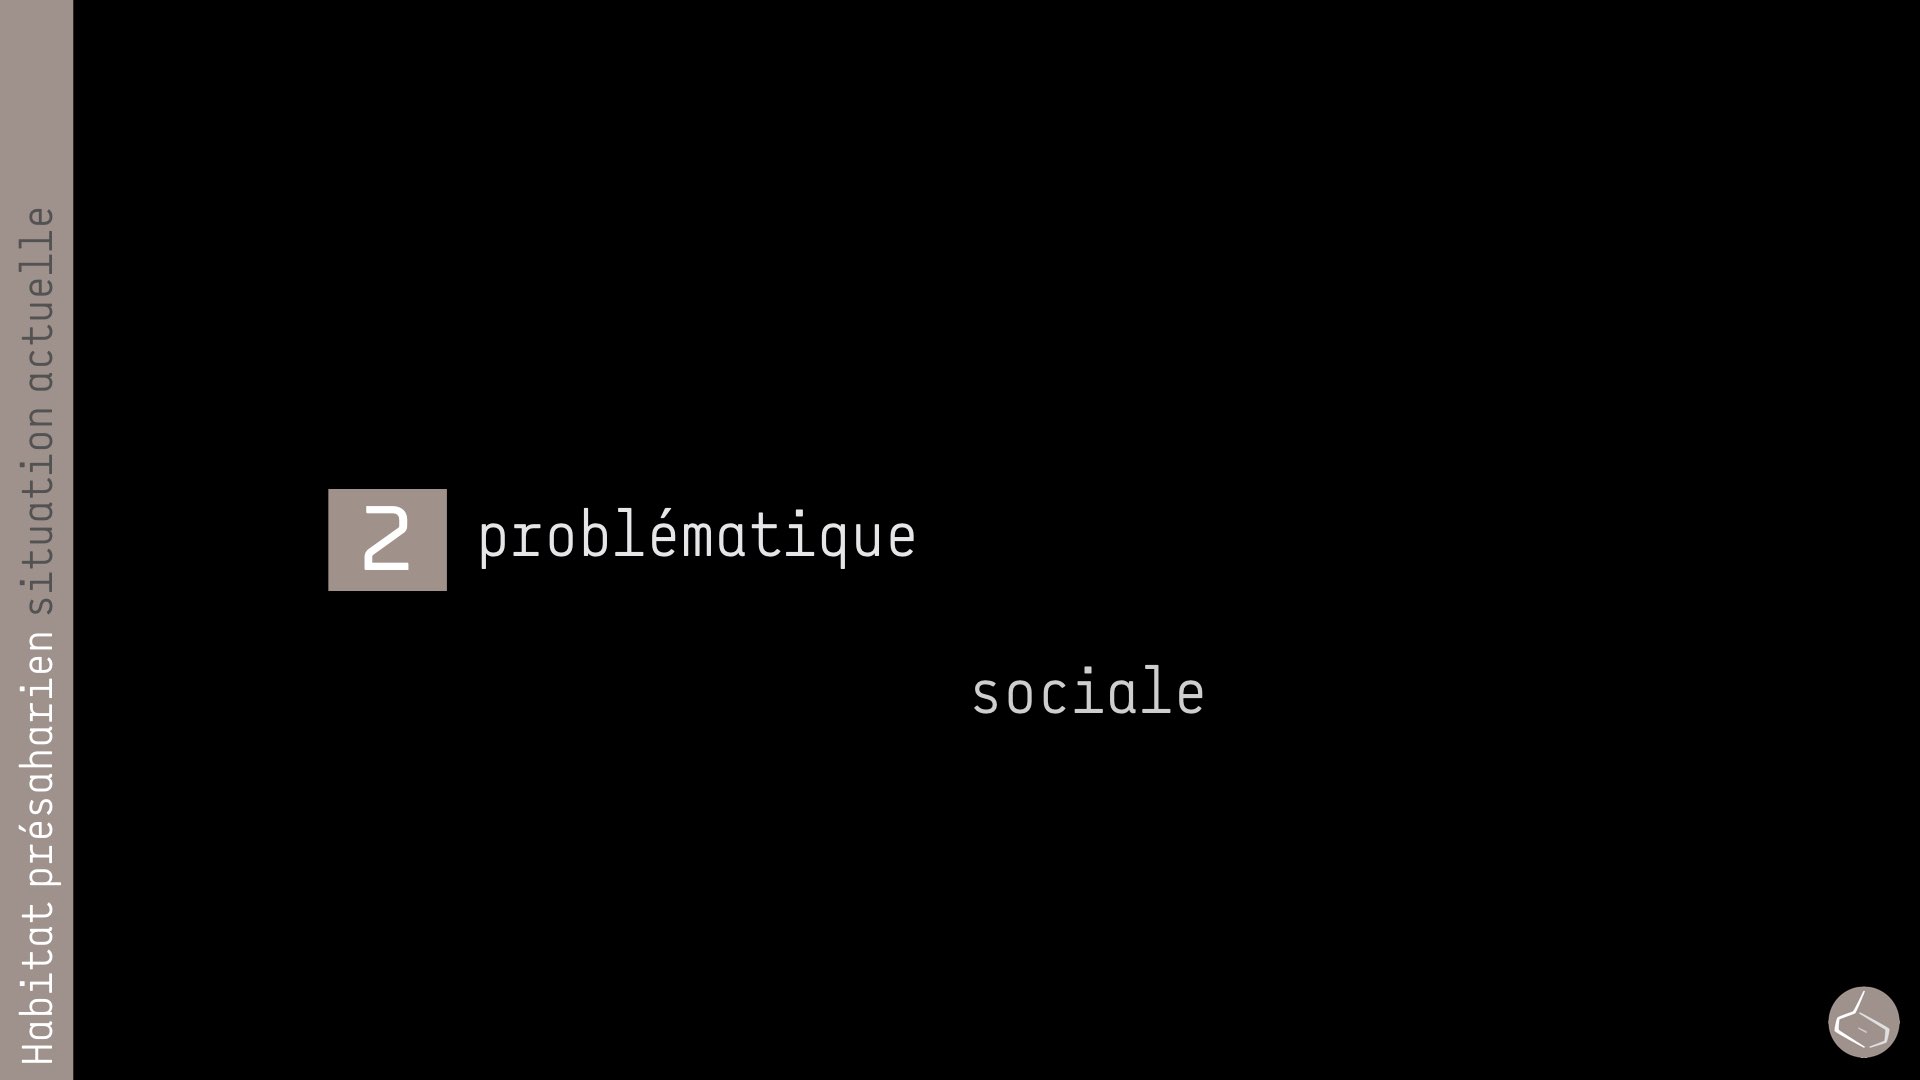   49. Une problématique moins tangible est celle de la sociologie.        49. A less tangible issue is that of sociology.  